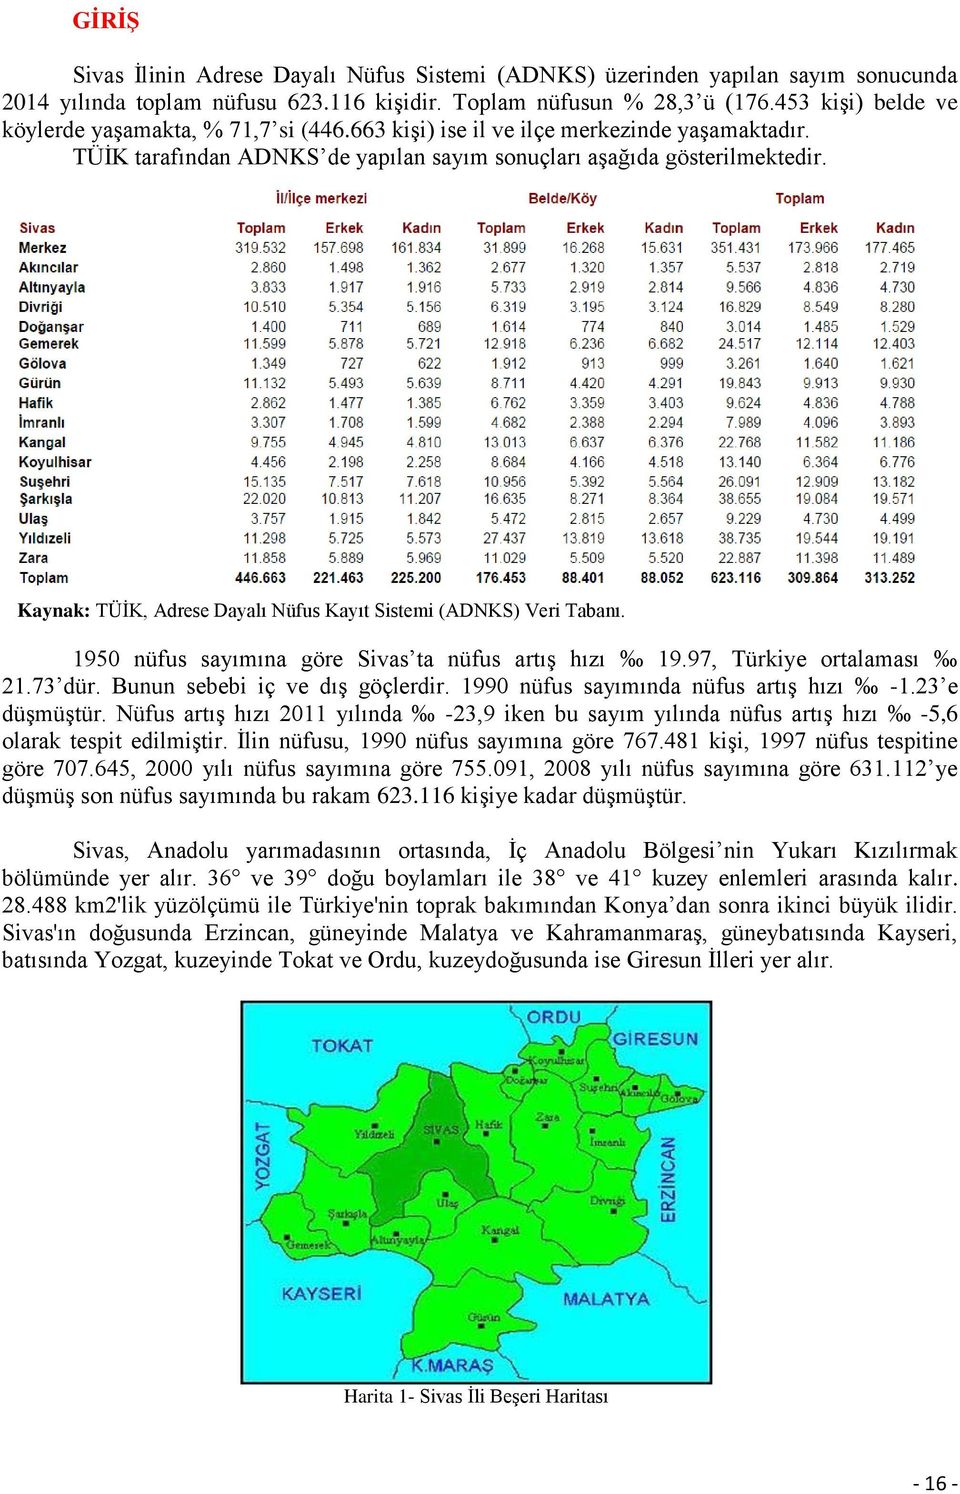 Kaynak: TÜİK, Adrese Dayalı Nüfus Kayıt Sistemi (ADNKS) Veri Tabanı. 1950 nüfus sayımına göre Sivas ta nüfus artış hızı 19.97, Türkiye ortalaması 21.73 dür. Bunun sebebi iç ve dış göçlerdir.